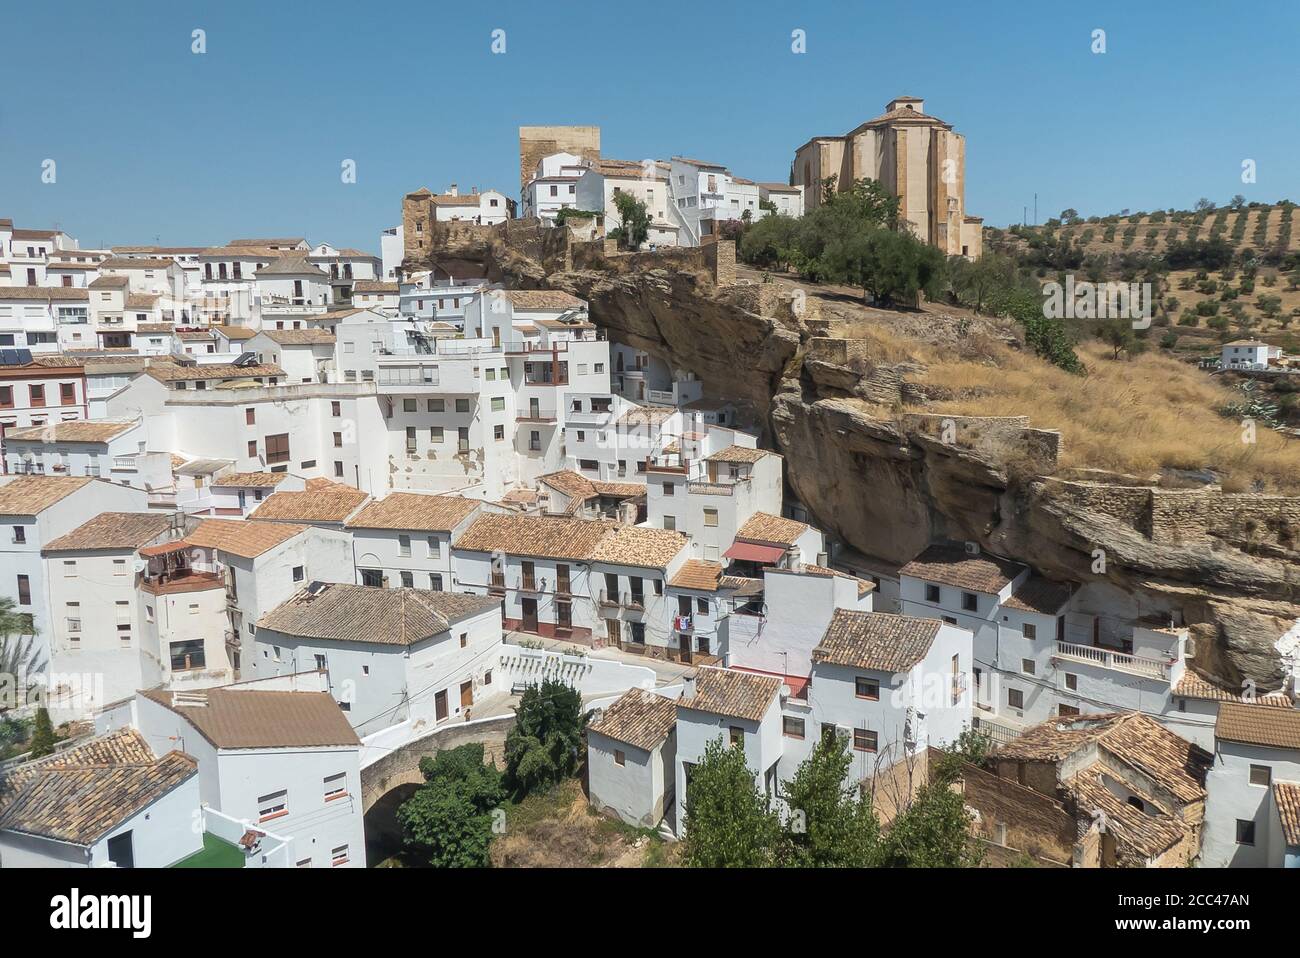 Andalucia in Spain: the pretty pueblo blanco of Setenil de las Bodegas Stock Photo